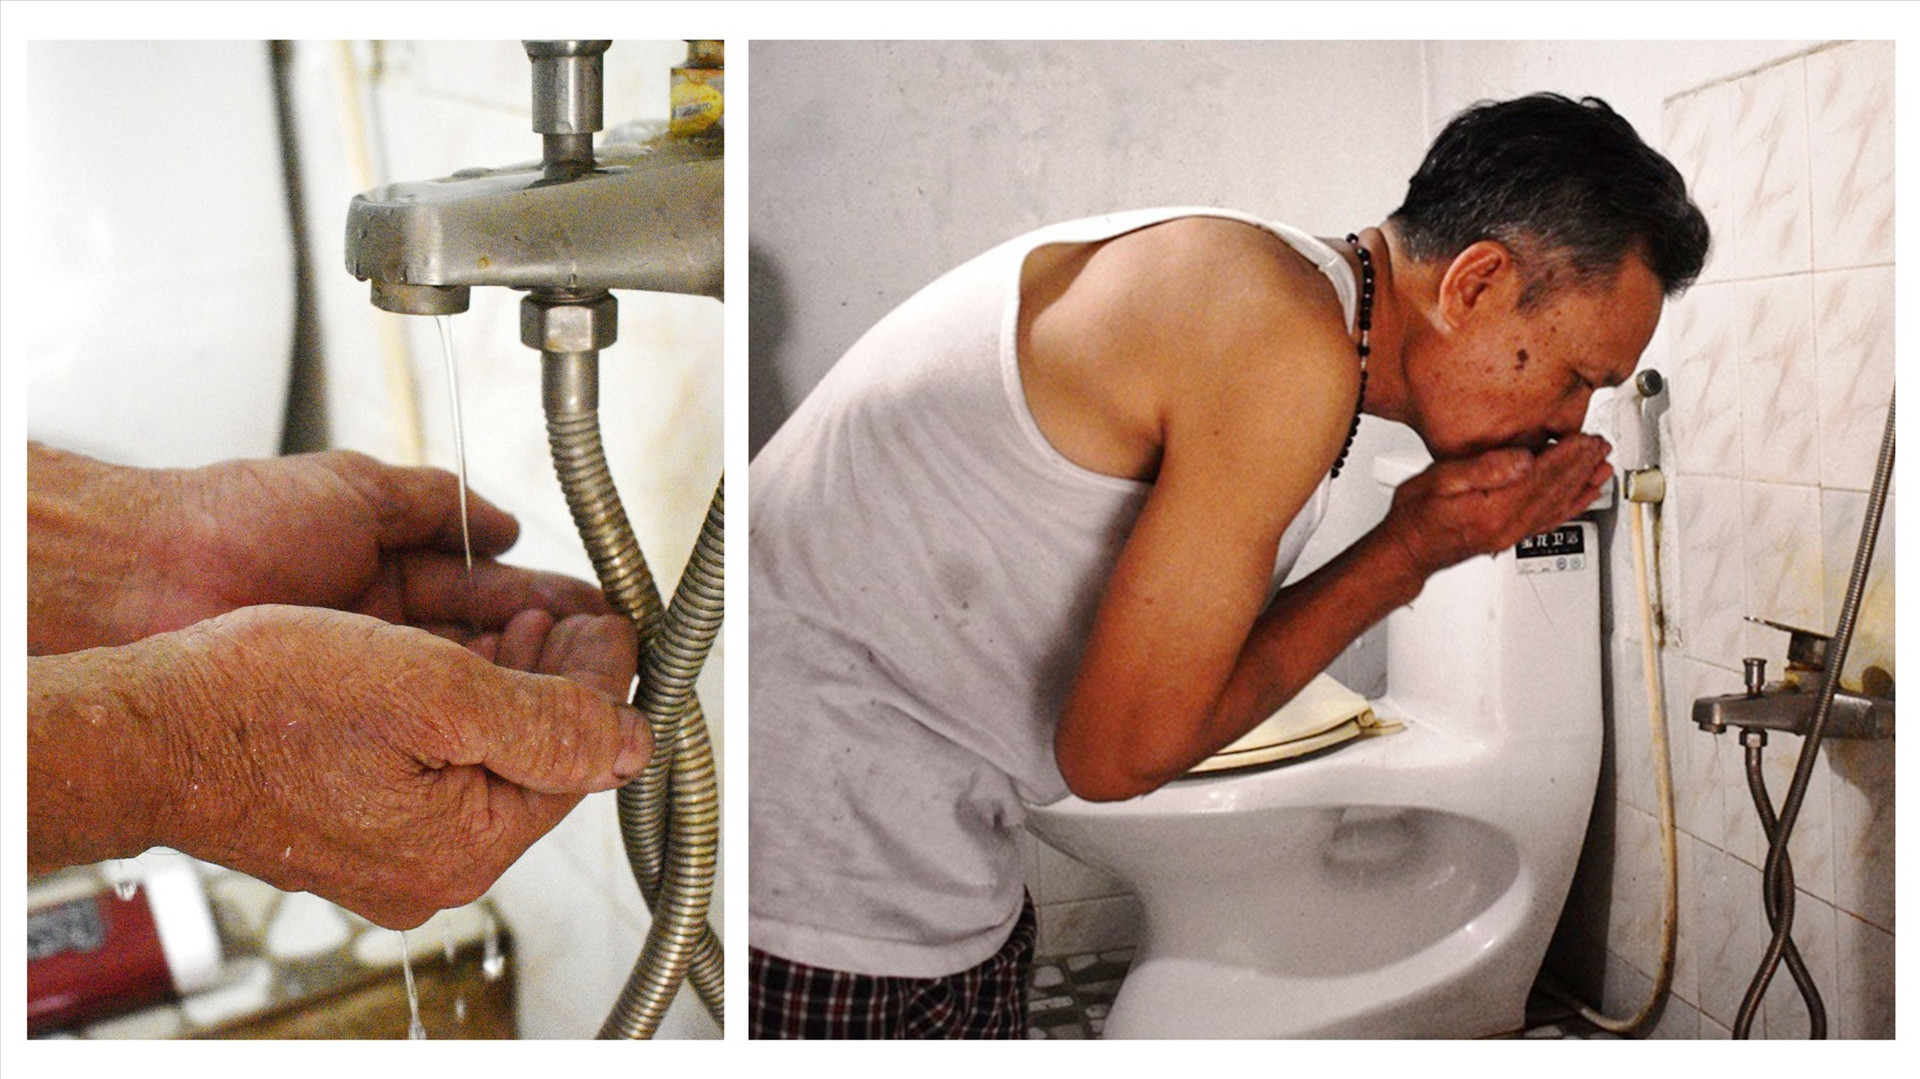 Nguồn nước máy của Xí nghiệp Cấp thoát nước Nam Phước khi cung cấp cho người dân có vị mặn, đôi lúc còn chảy yếu khiến người dân trên địa bàn huyện Duy Xuyên bức xúc mỗi khi hè về. Ảnh: N.Q